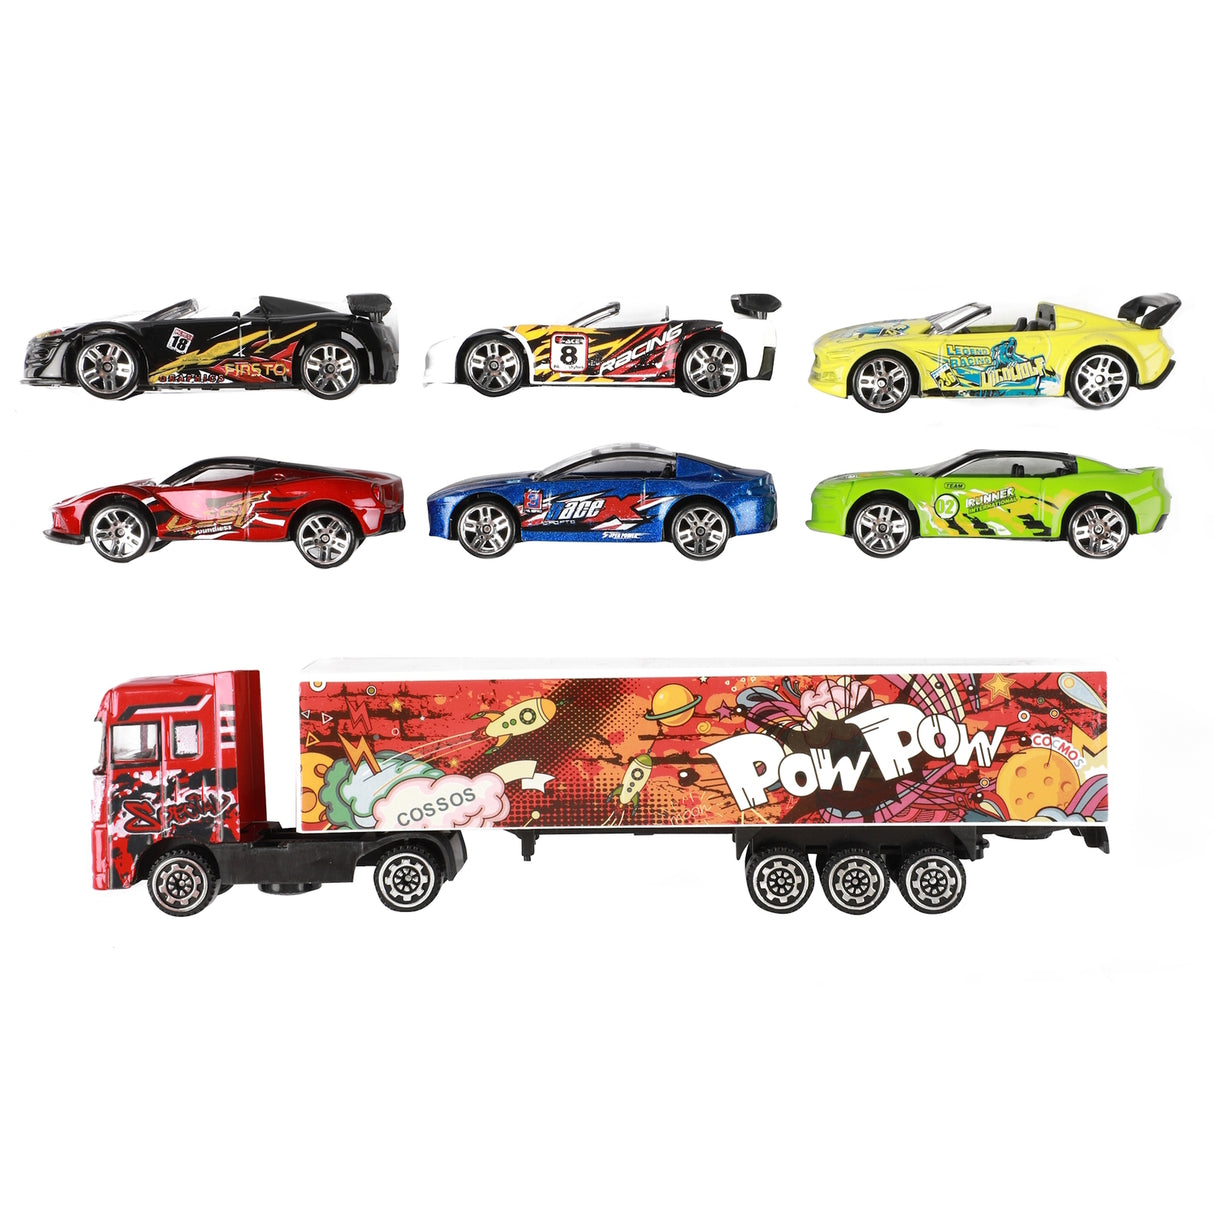 LKW Spielzeugauto mit 6 Sportwagen in bunten Farben